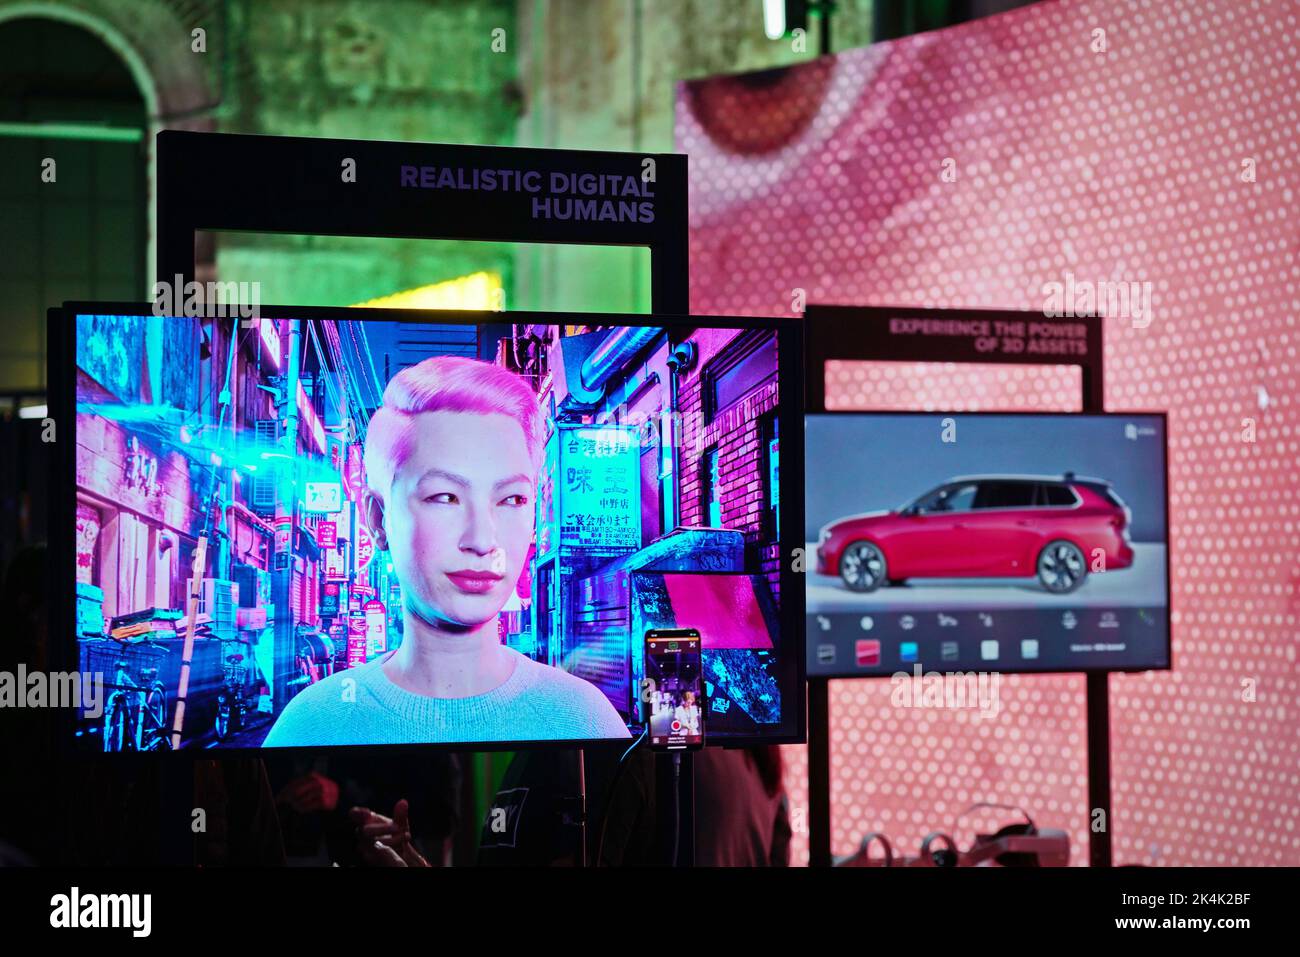 Mostra di realtà virtuale. Un monitor mostra il volto persone digitali iperrealistiche. Torino, Italia - Settembre 2022 Foto Stock